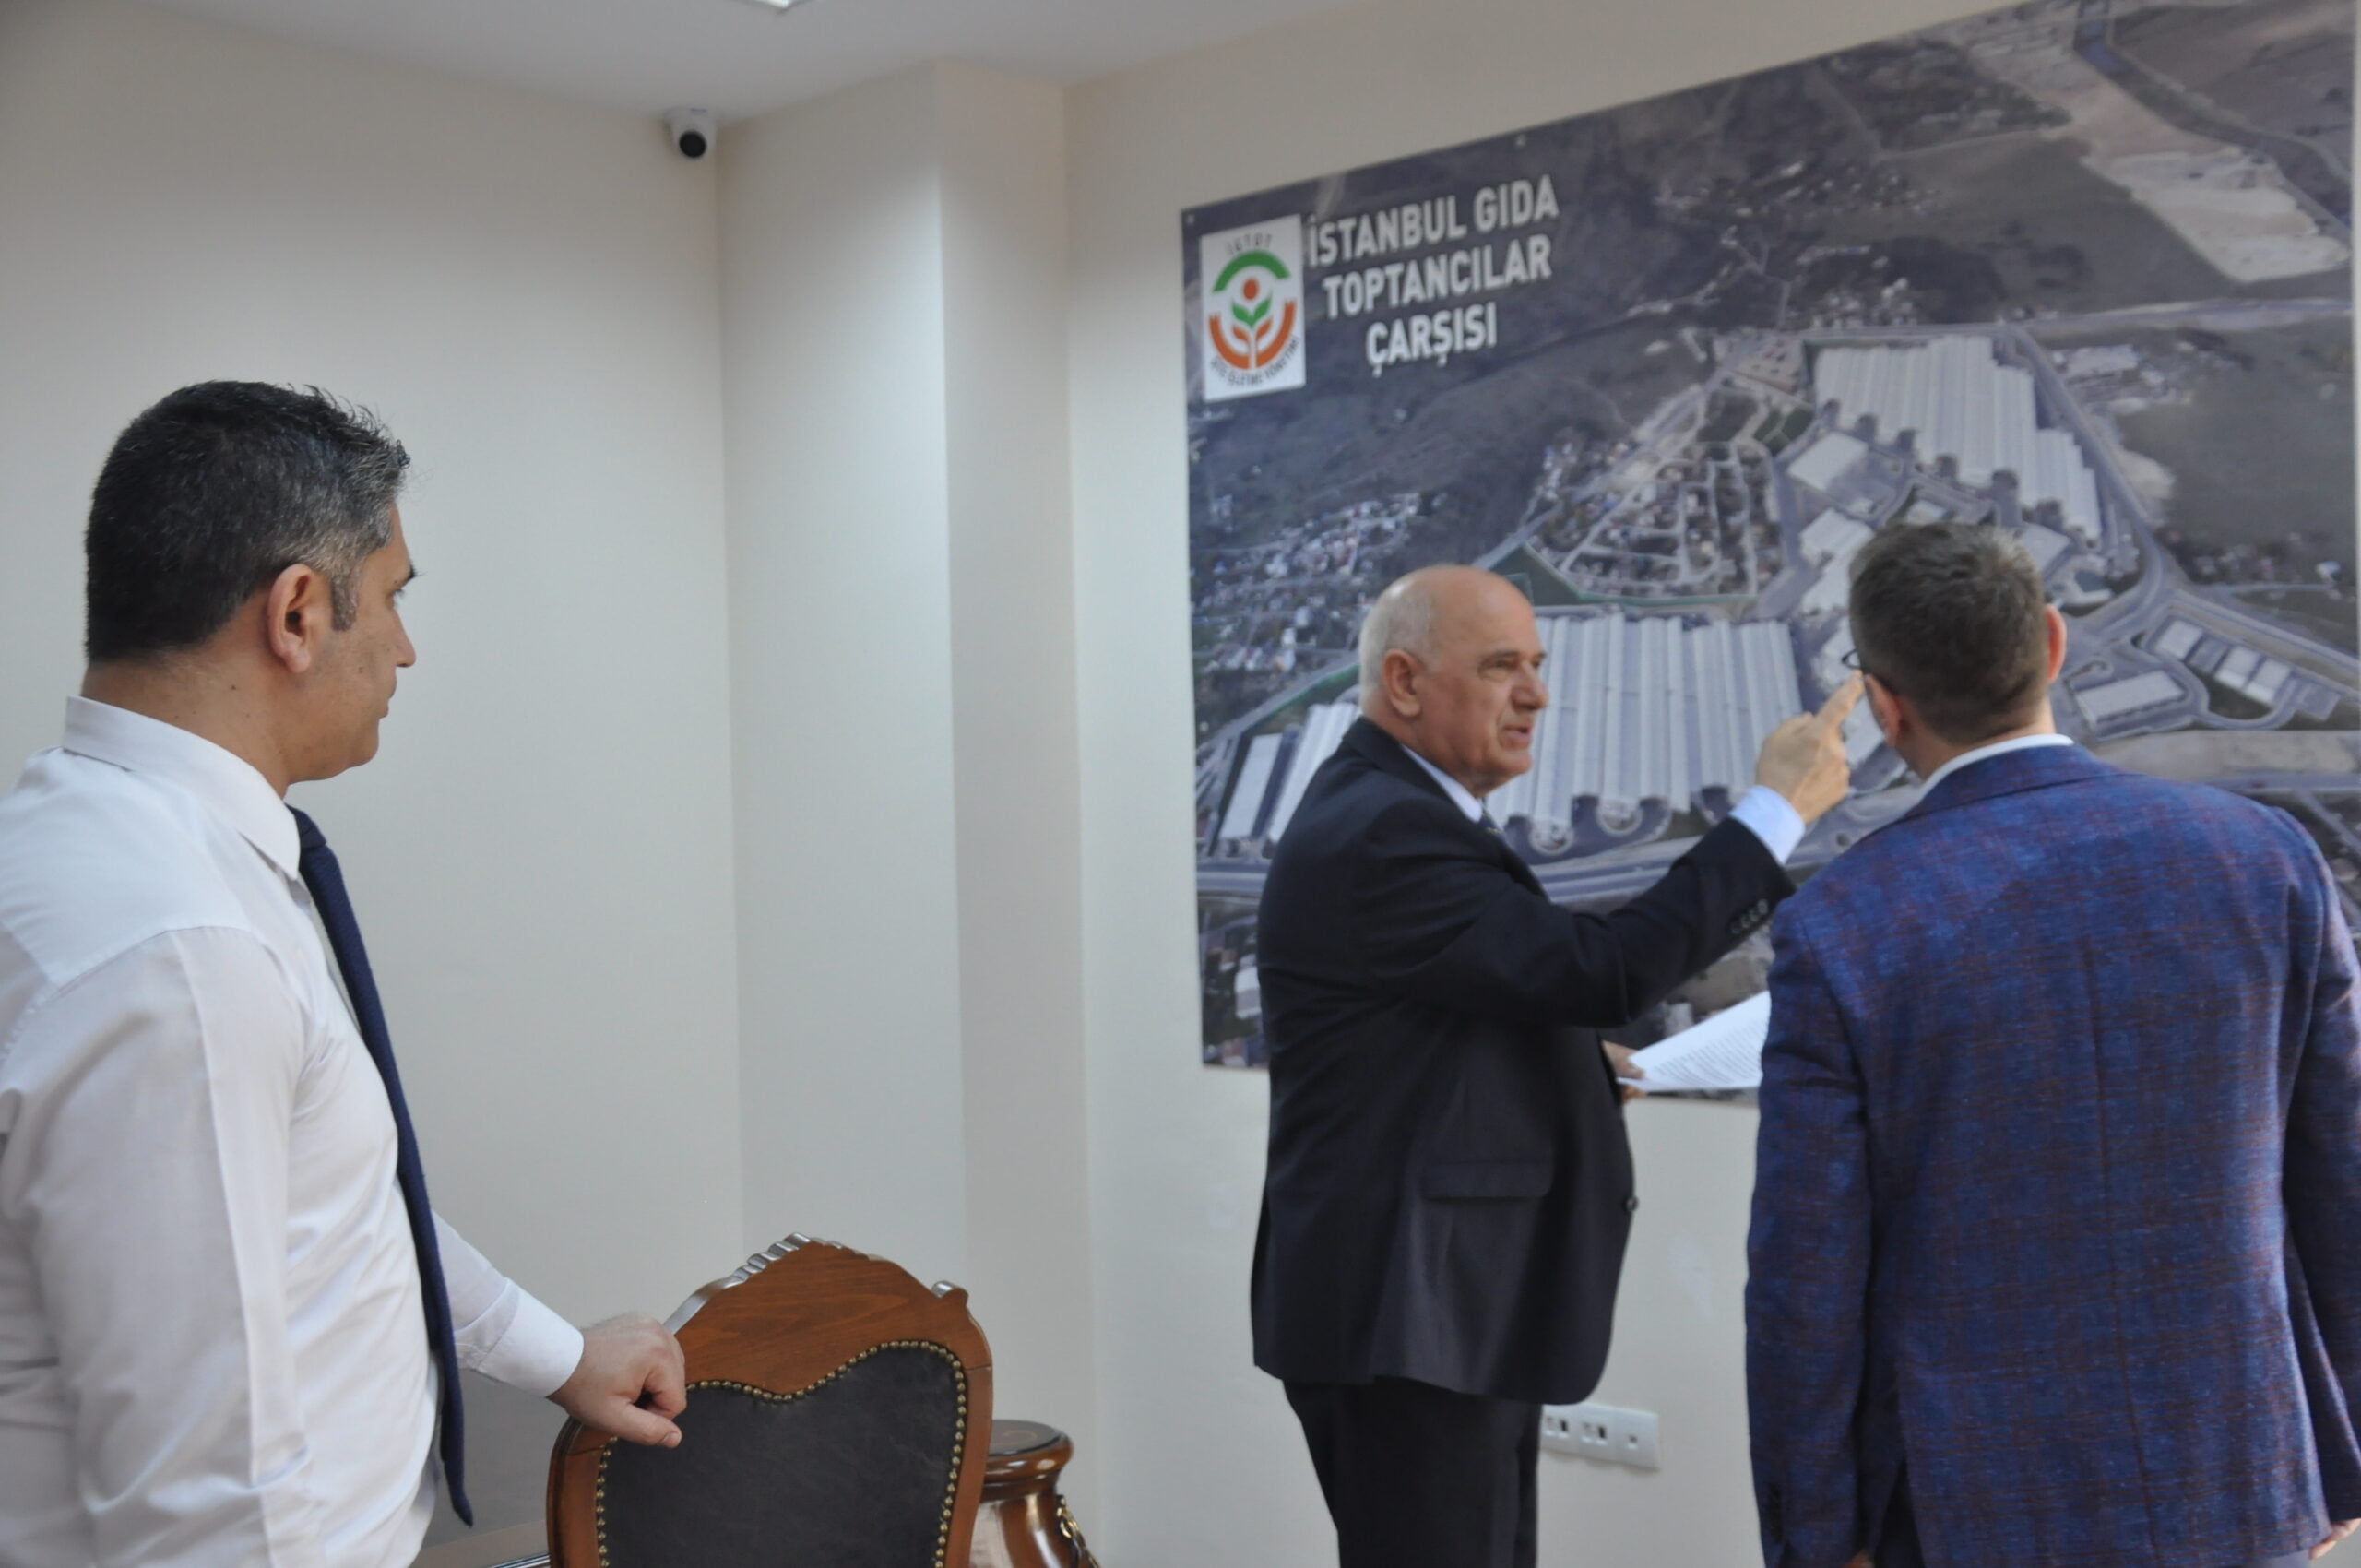 Başakşehir Belediye Başkanı Yasin Kartoğlu İstanbul Gıda Toptancılar Çarşısı Kooperatifi (İgtot)Başkanı Mustafa Karlı’Yı Makamında Ziyaret Etti.